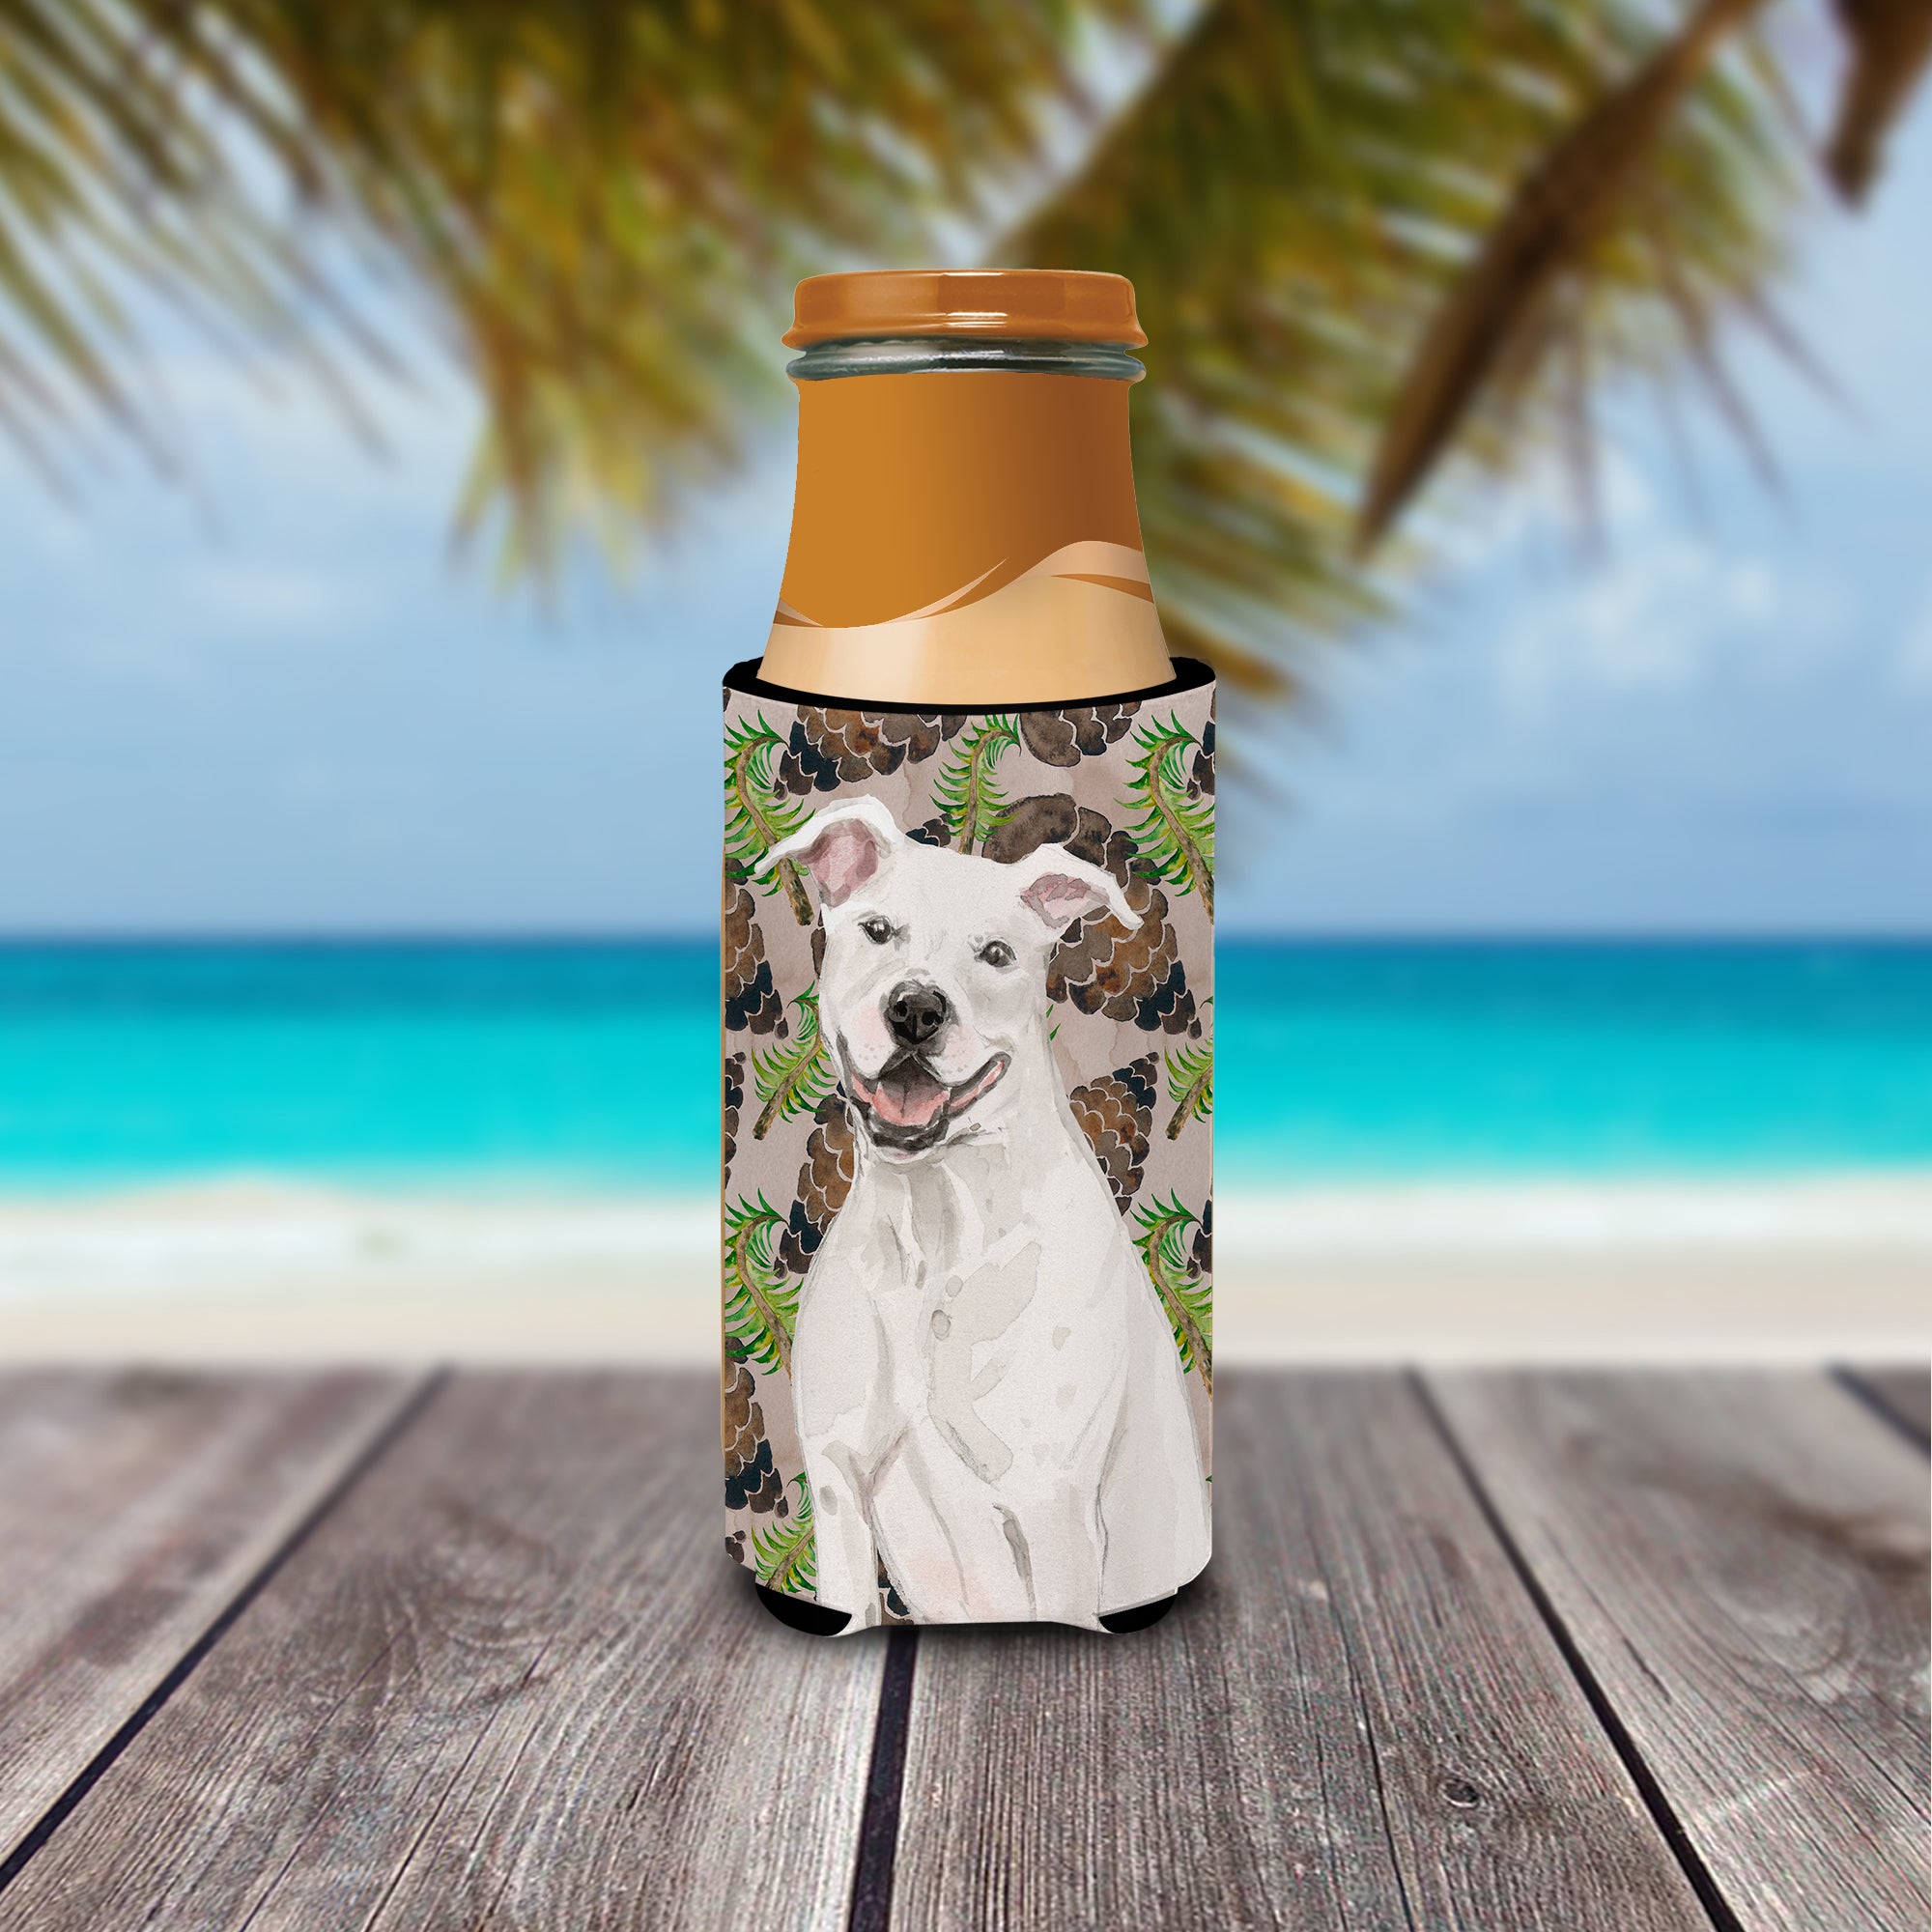 White Staffie Bull Terrier Pine Cones  Ultra Hugger for slim cans BB9571MUK